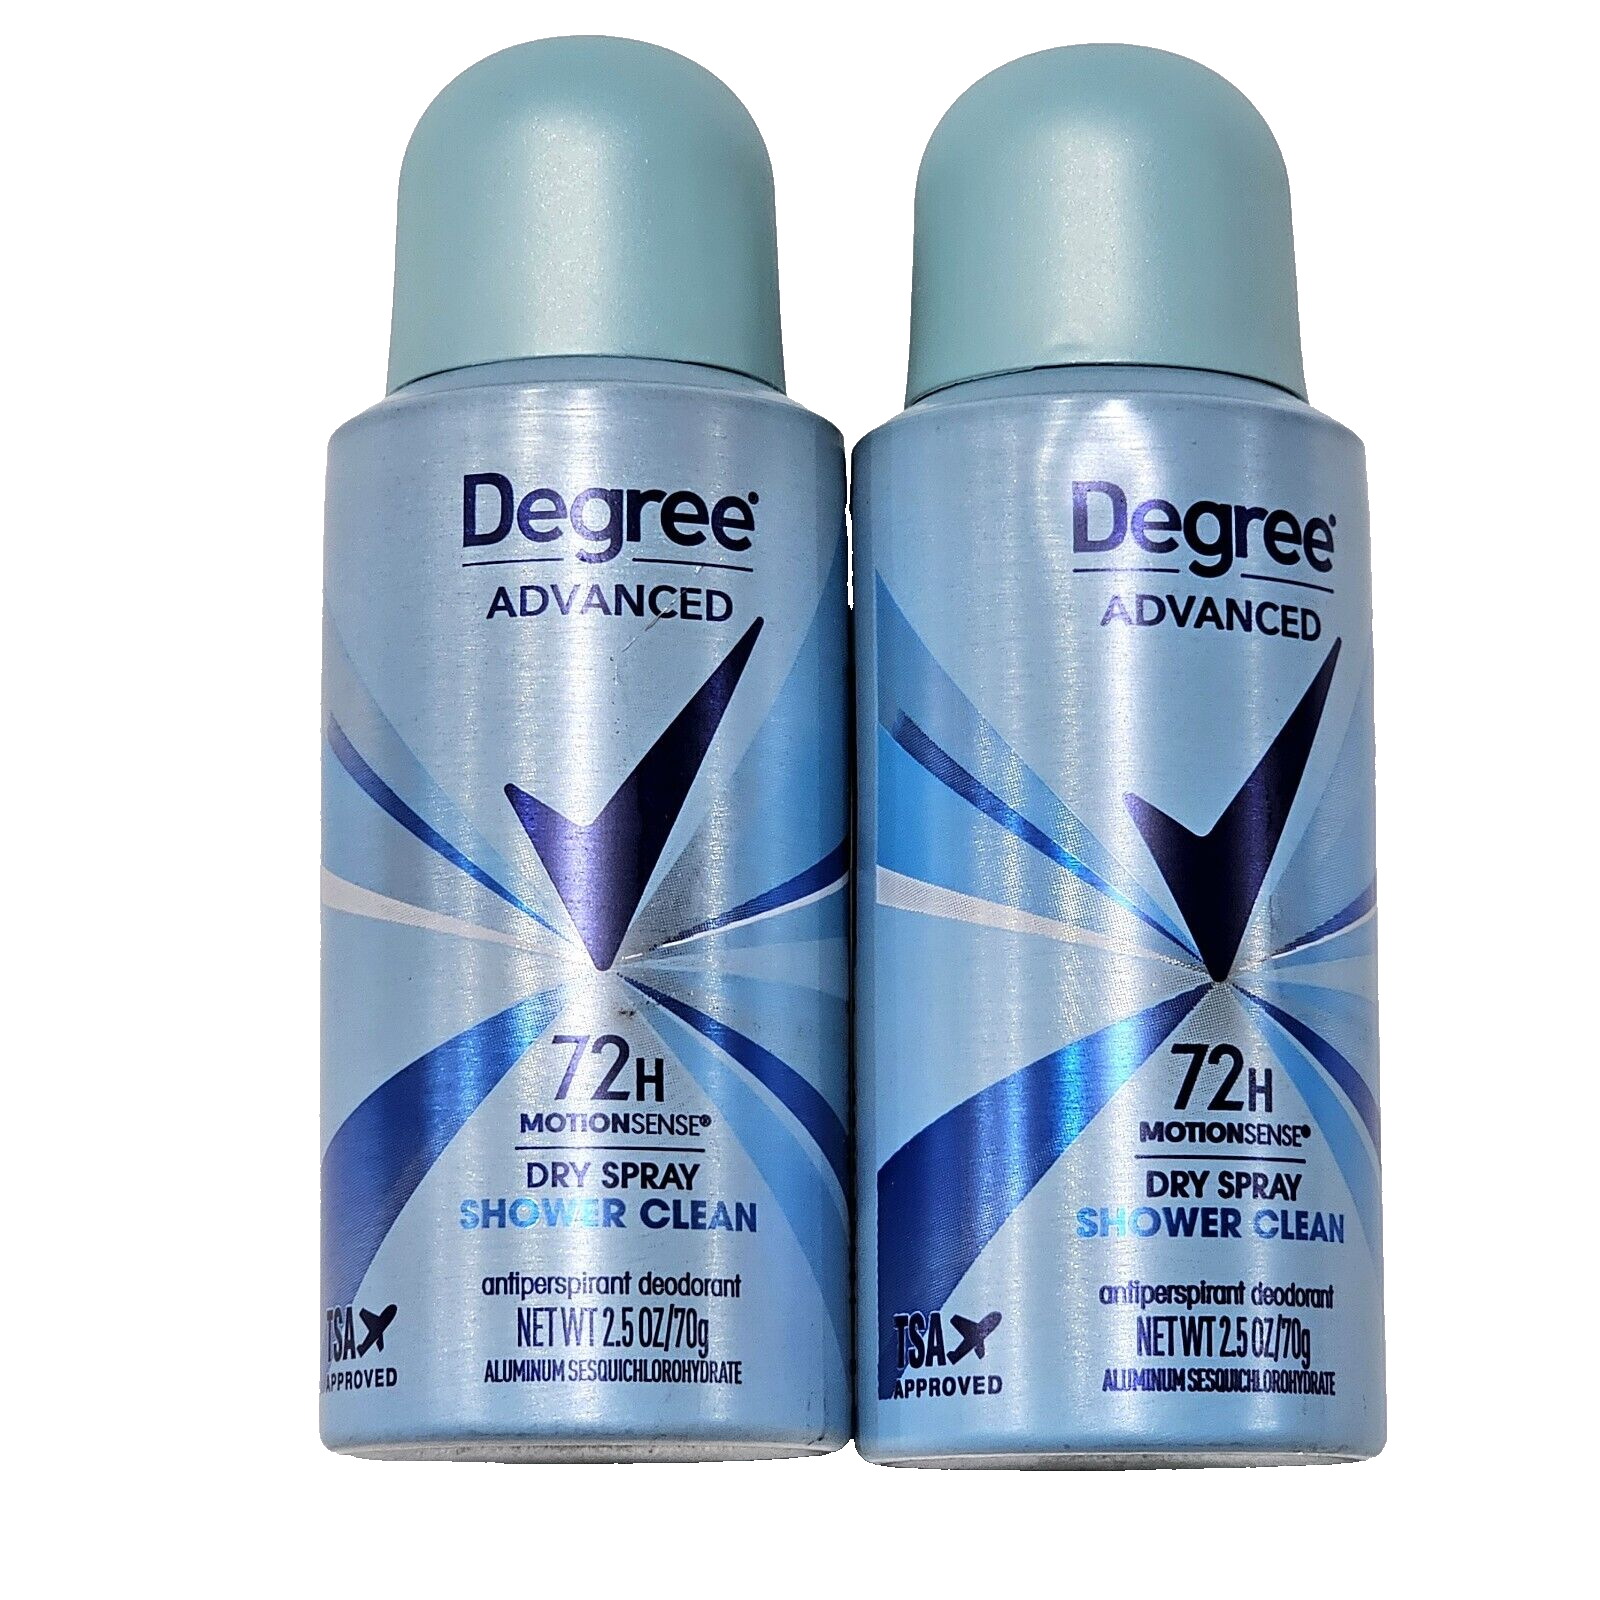 2 Pack Degree Advanced 72h Motion Sense Dry Spray Shower Clean Antiperspirant... - $25.99